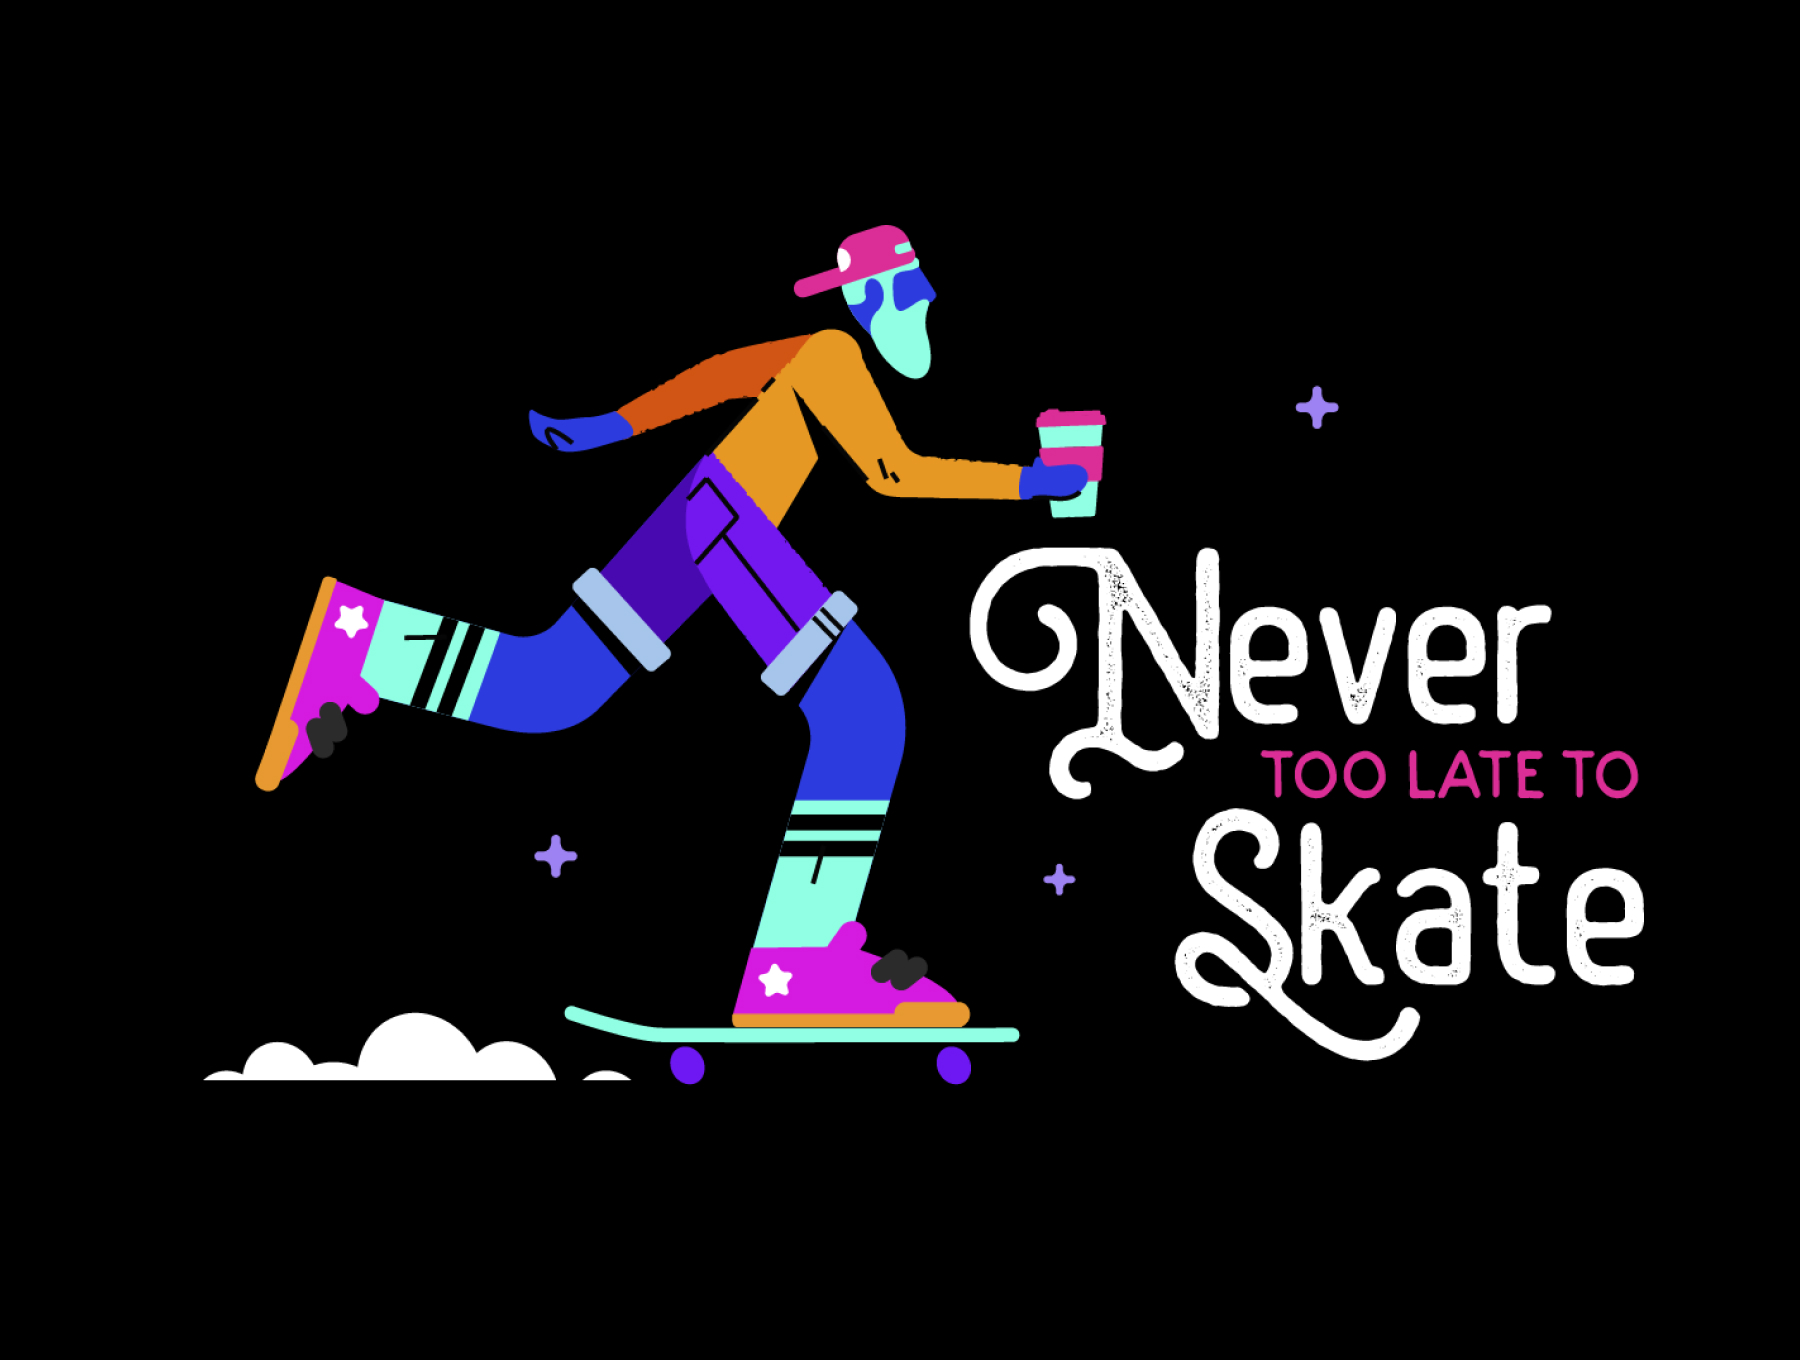 1491 12款霓虹滑板运动插图AI矢量素材 Neon skaters set